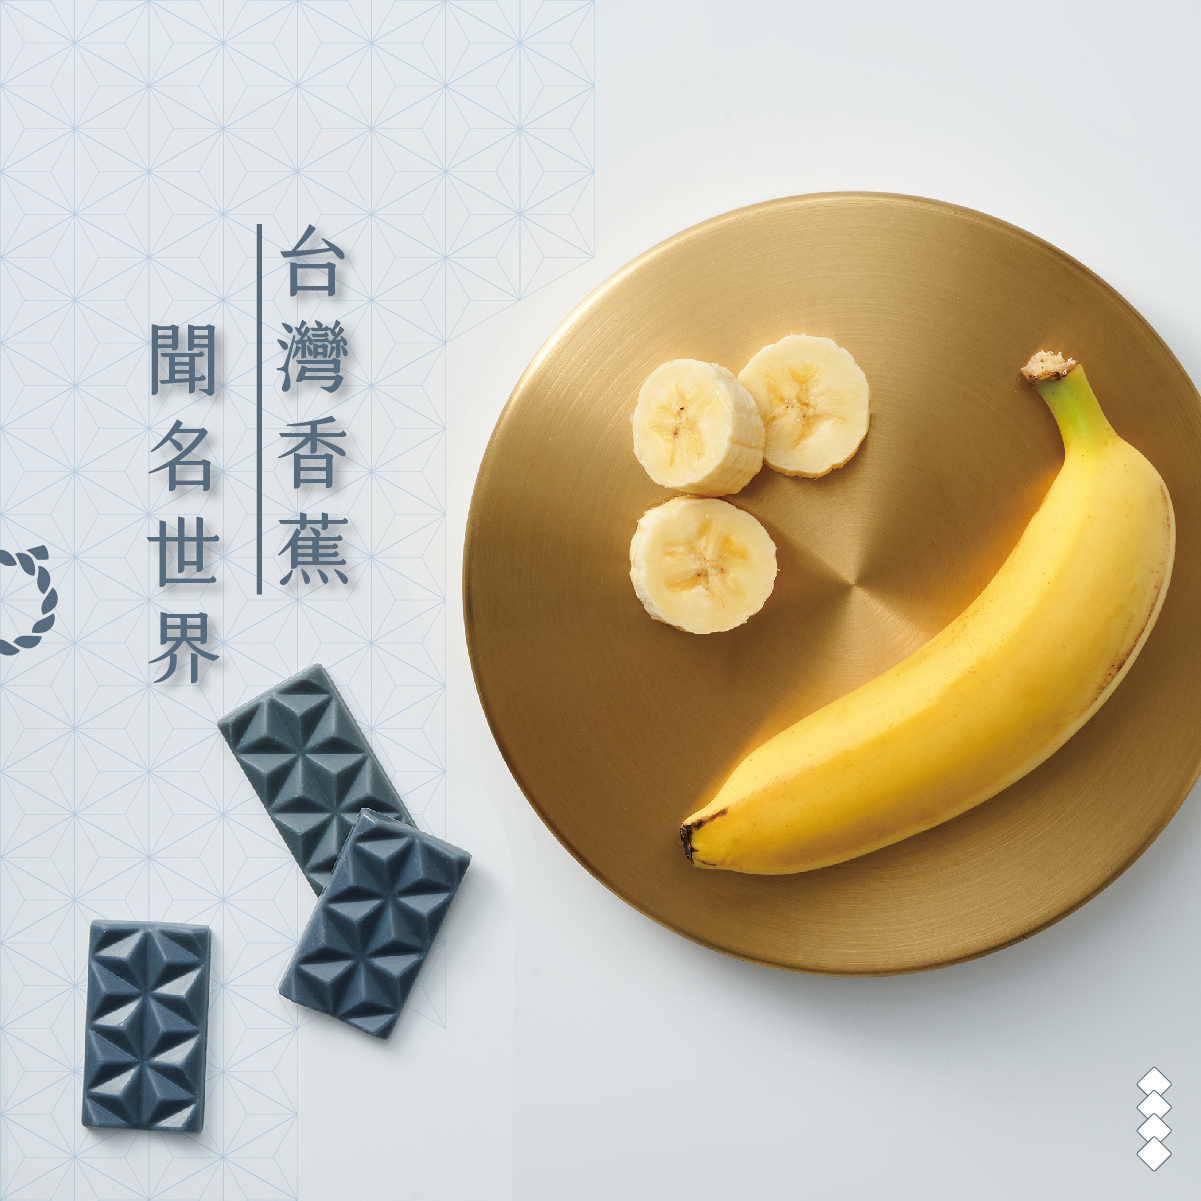 【高纖無糖】404 Oligo 幸福祈願益生元白巧克力-香蕉 x1盒